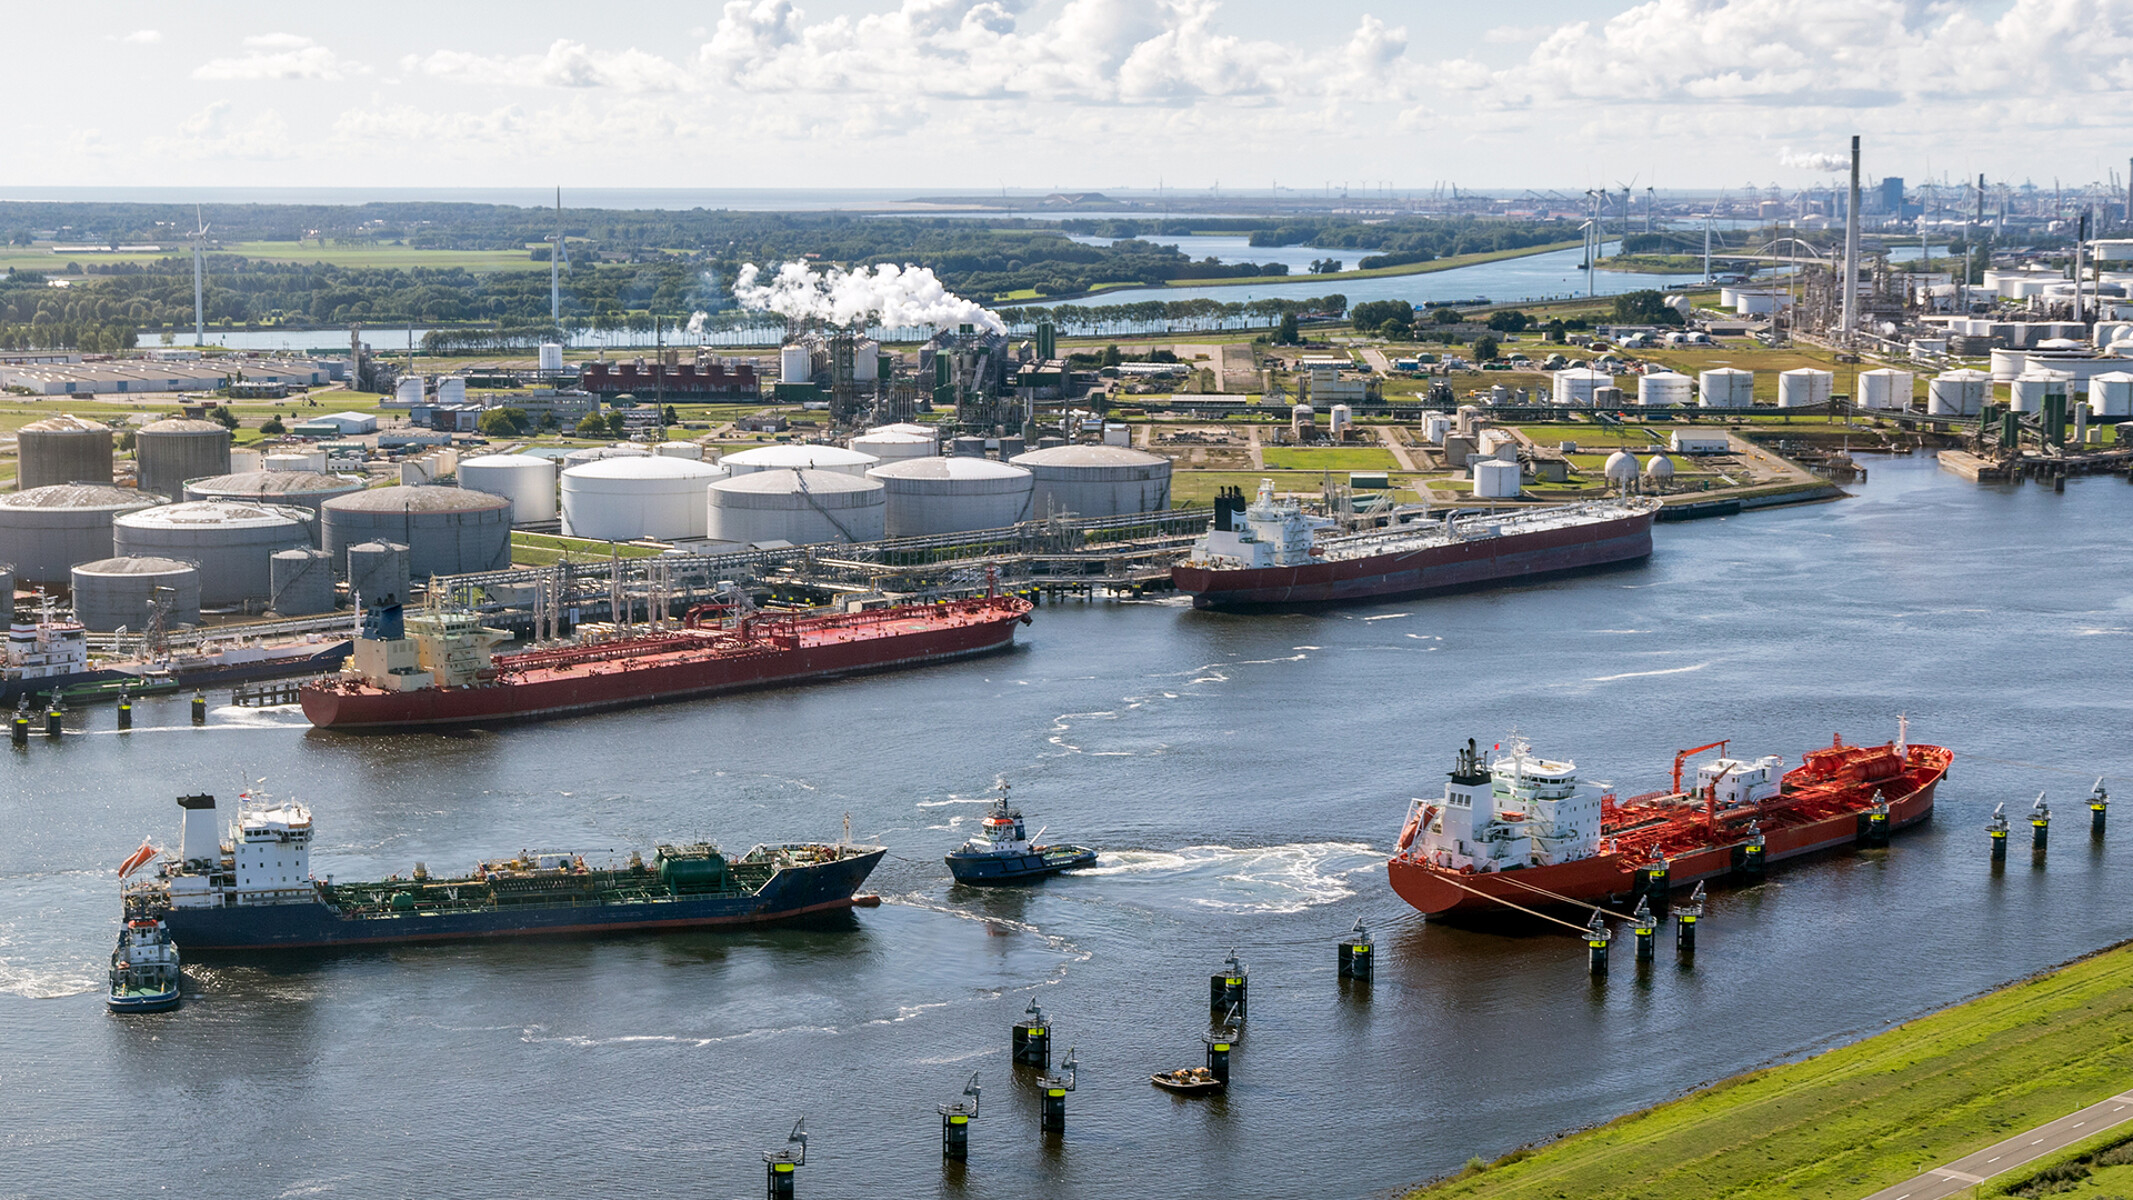 Du upe plaukiantys tanklaiviai ruošiasi prisišvartuoti prie didelės naftos perdirbimo gamyklos